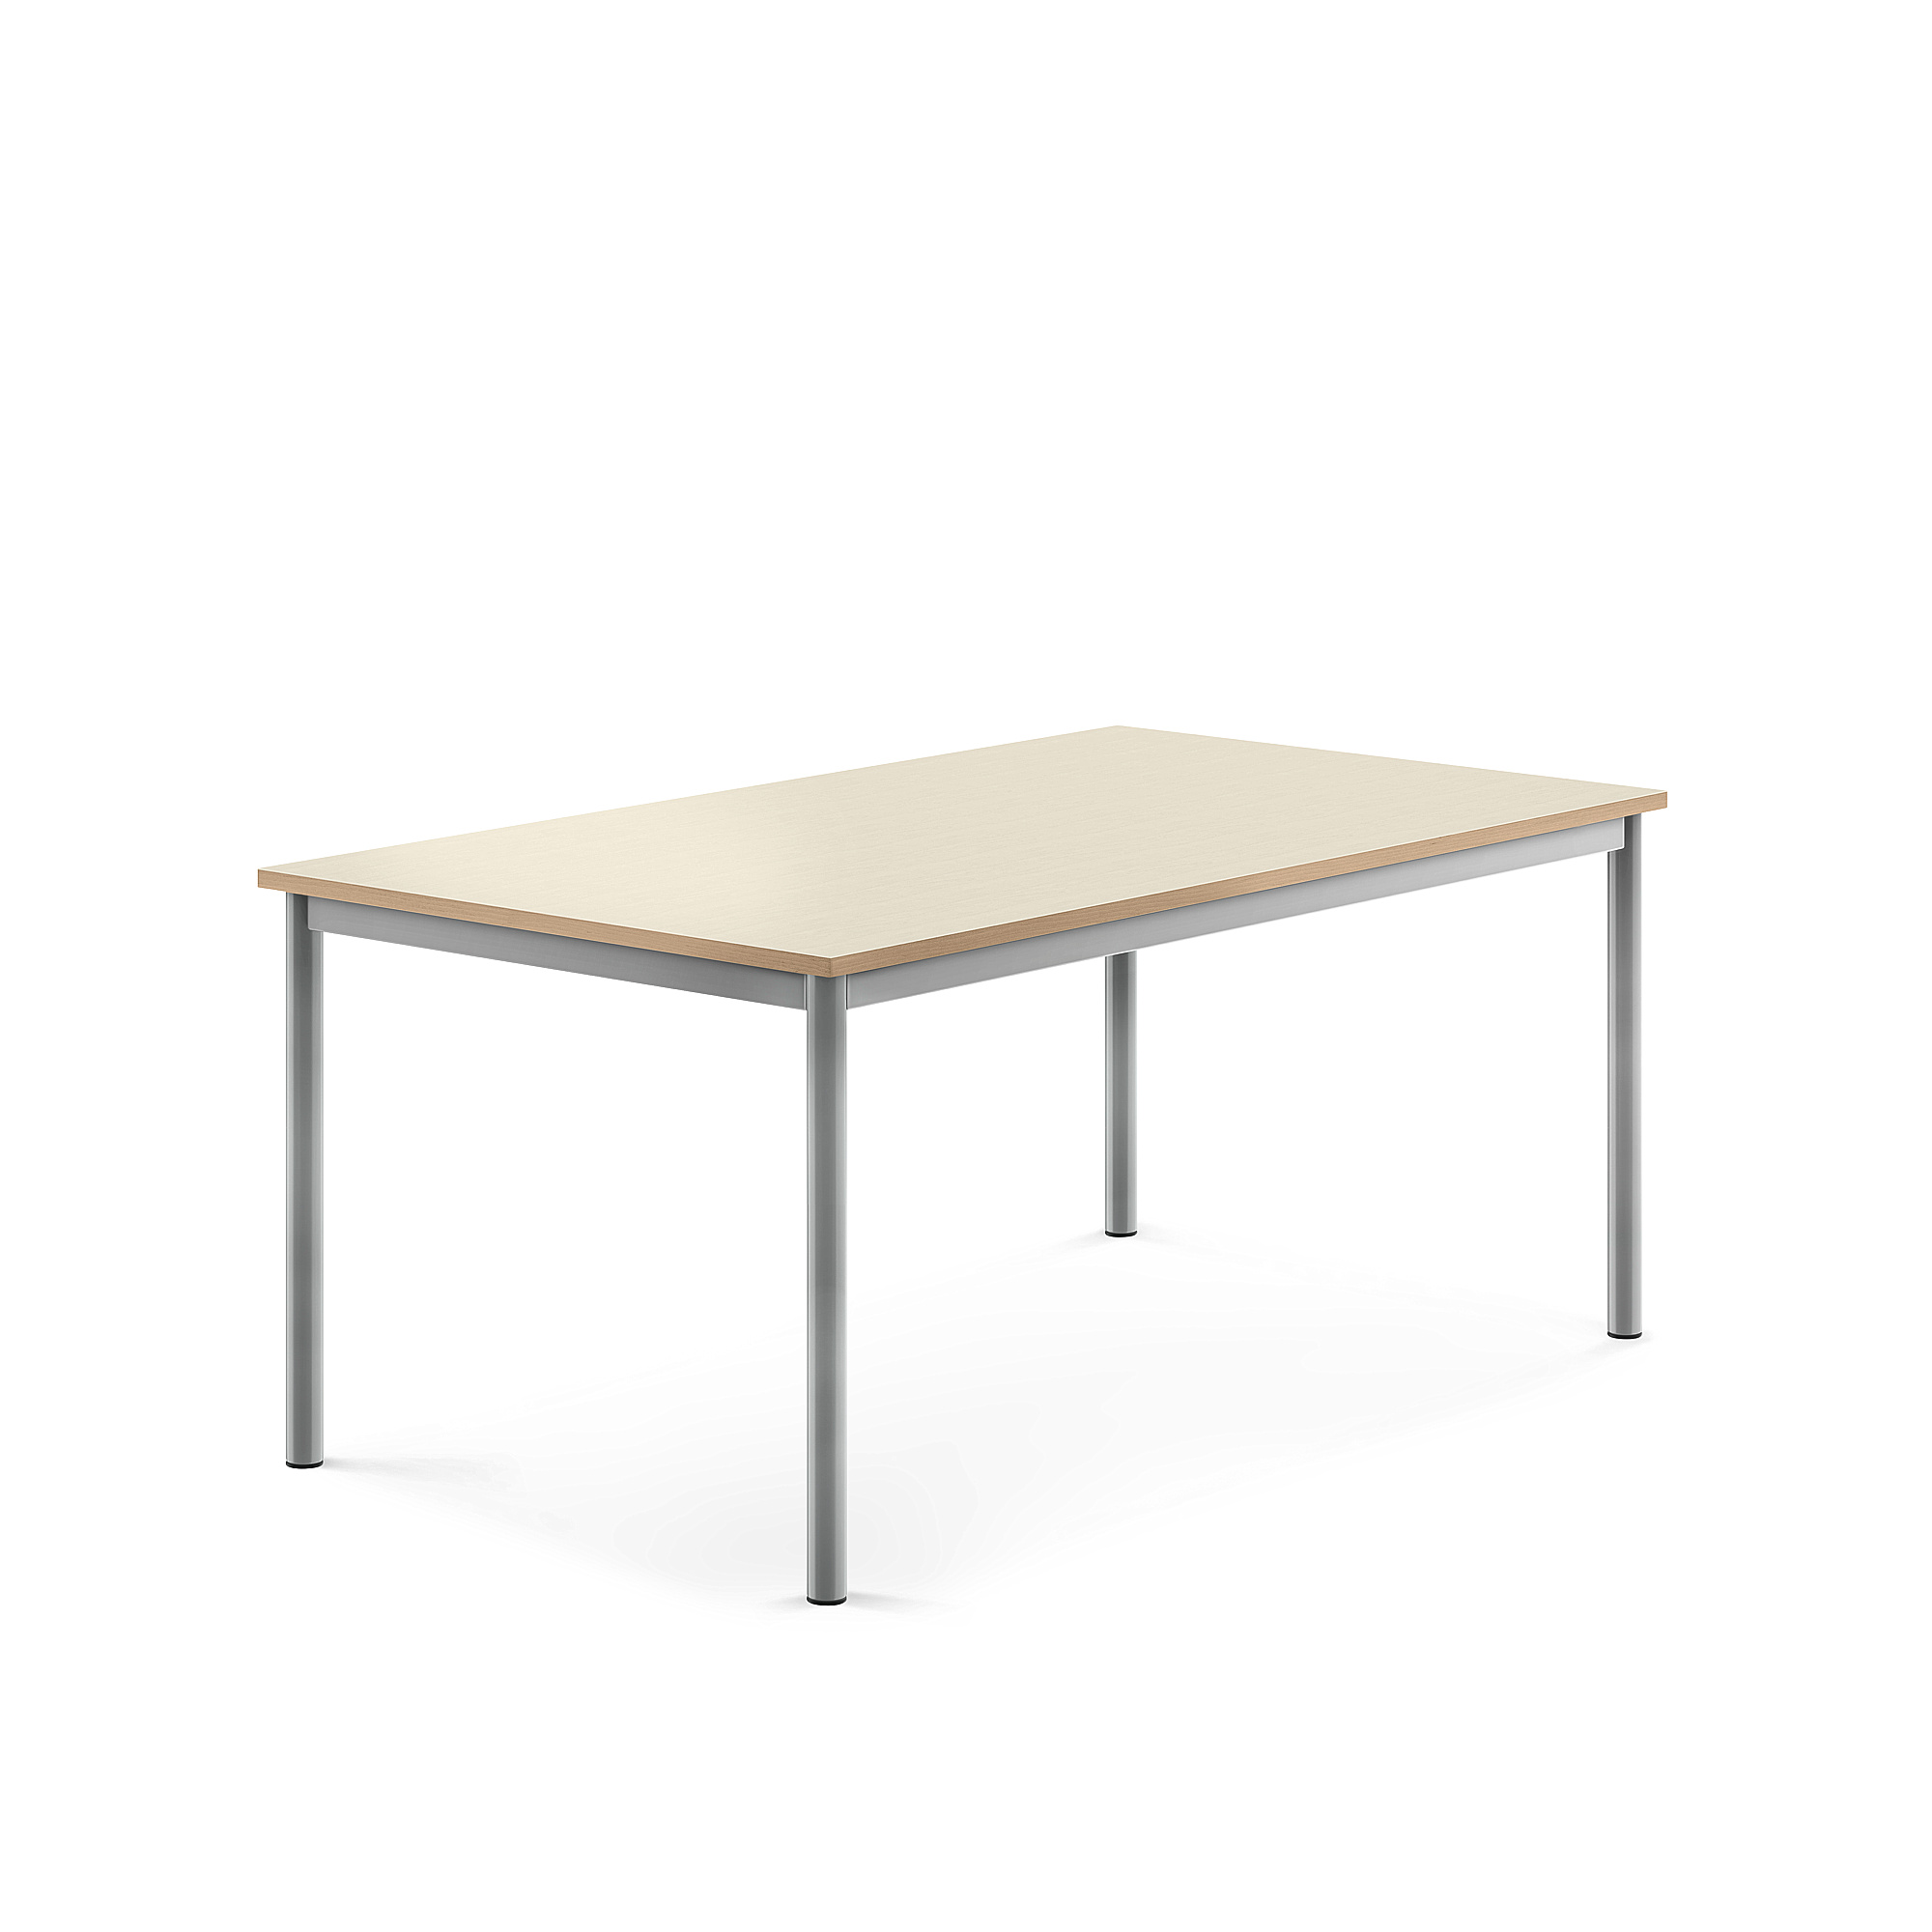 Stůl BORÅS, 1400x800x600 mm, stříbrné nohy, HPL deska, bříza